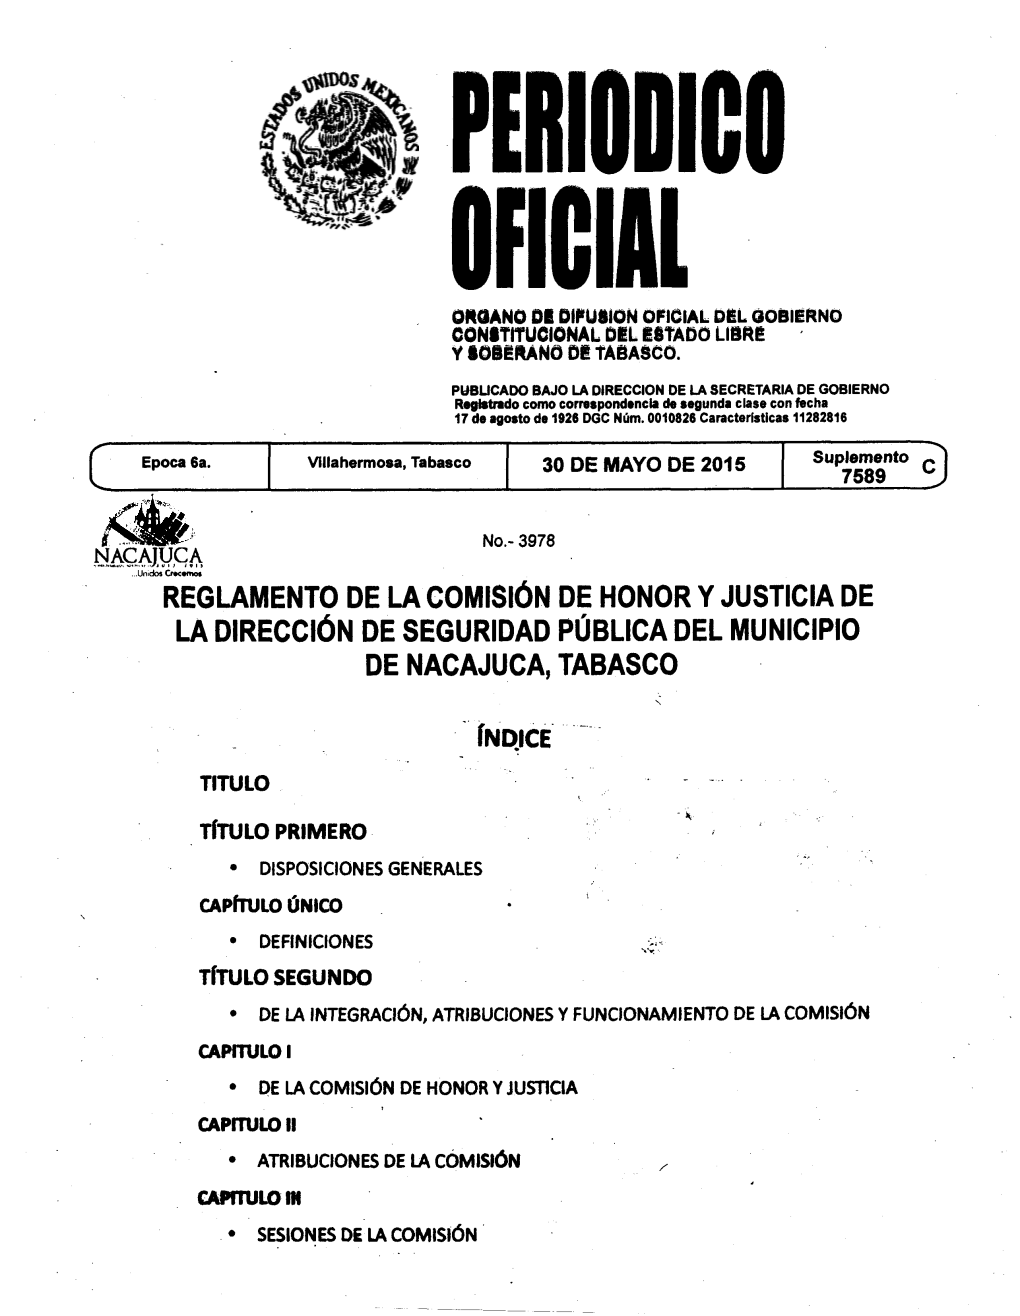 Reglamento De La Comisión De Honor Y Justicia De La Dirección De Seguridad Pública Del Municipio De Ñacajuca, Tabasco